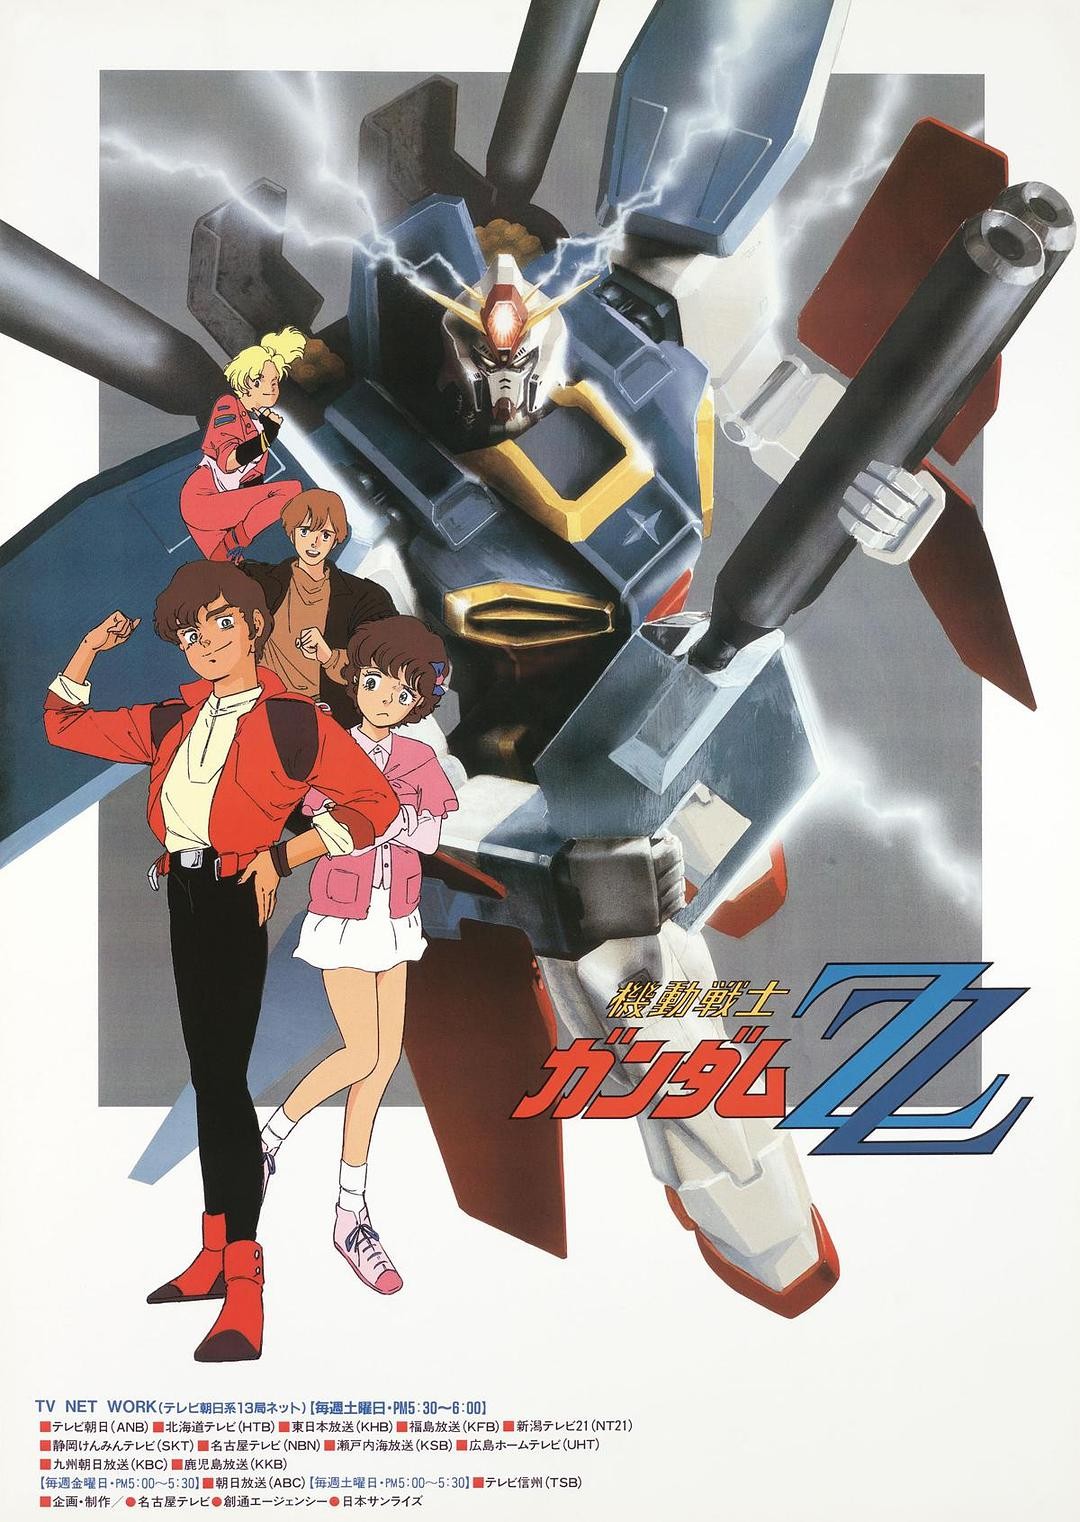 [代发] [Q_Vageena个人制作] [机动战士高达ZZ / 機動戦士ガンダムZZ / Mobile Suit Gundam ZZ] [01-47 FIN] [繁日双语内嵌] [BDRIP] [MKV] [1080P]插图icecomic动漫-云之彼端,约定的地方(´･ᴗ･`)